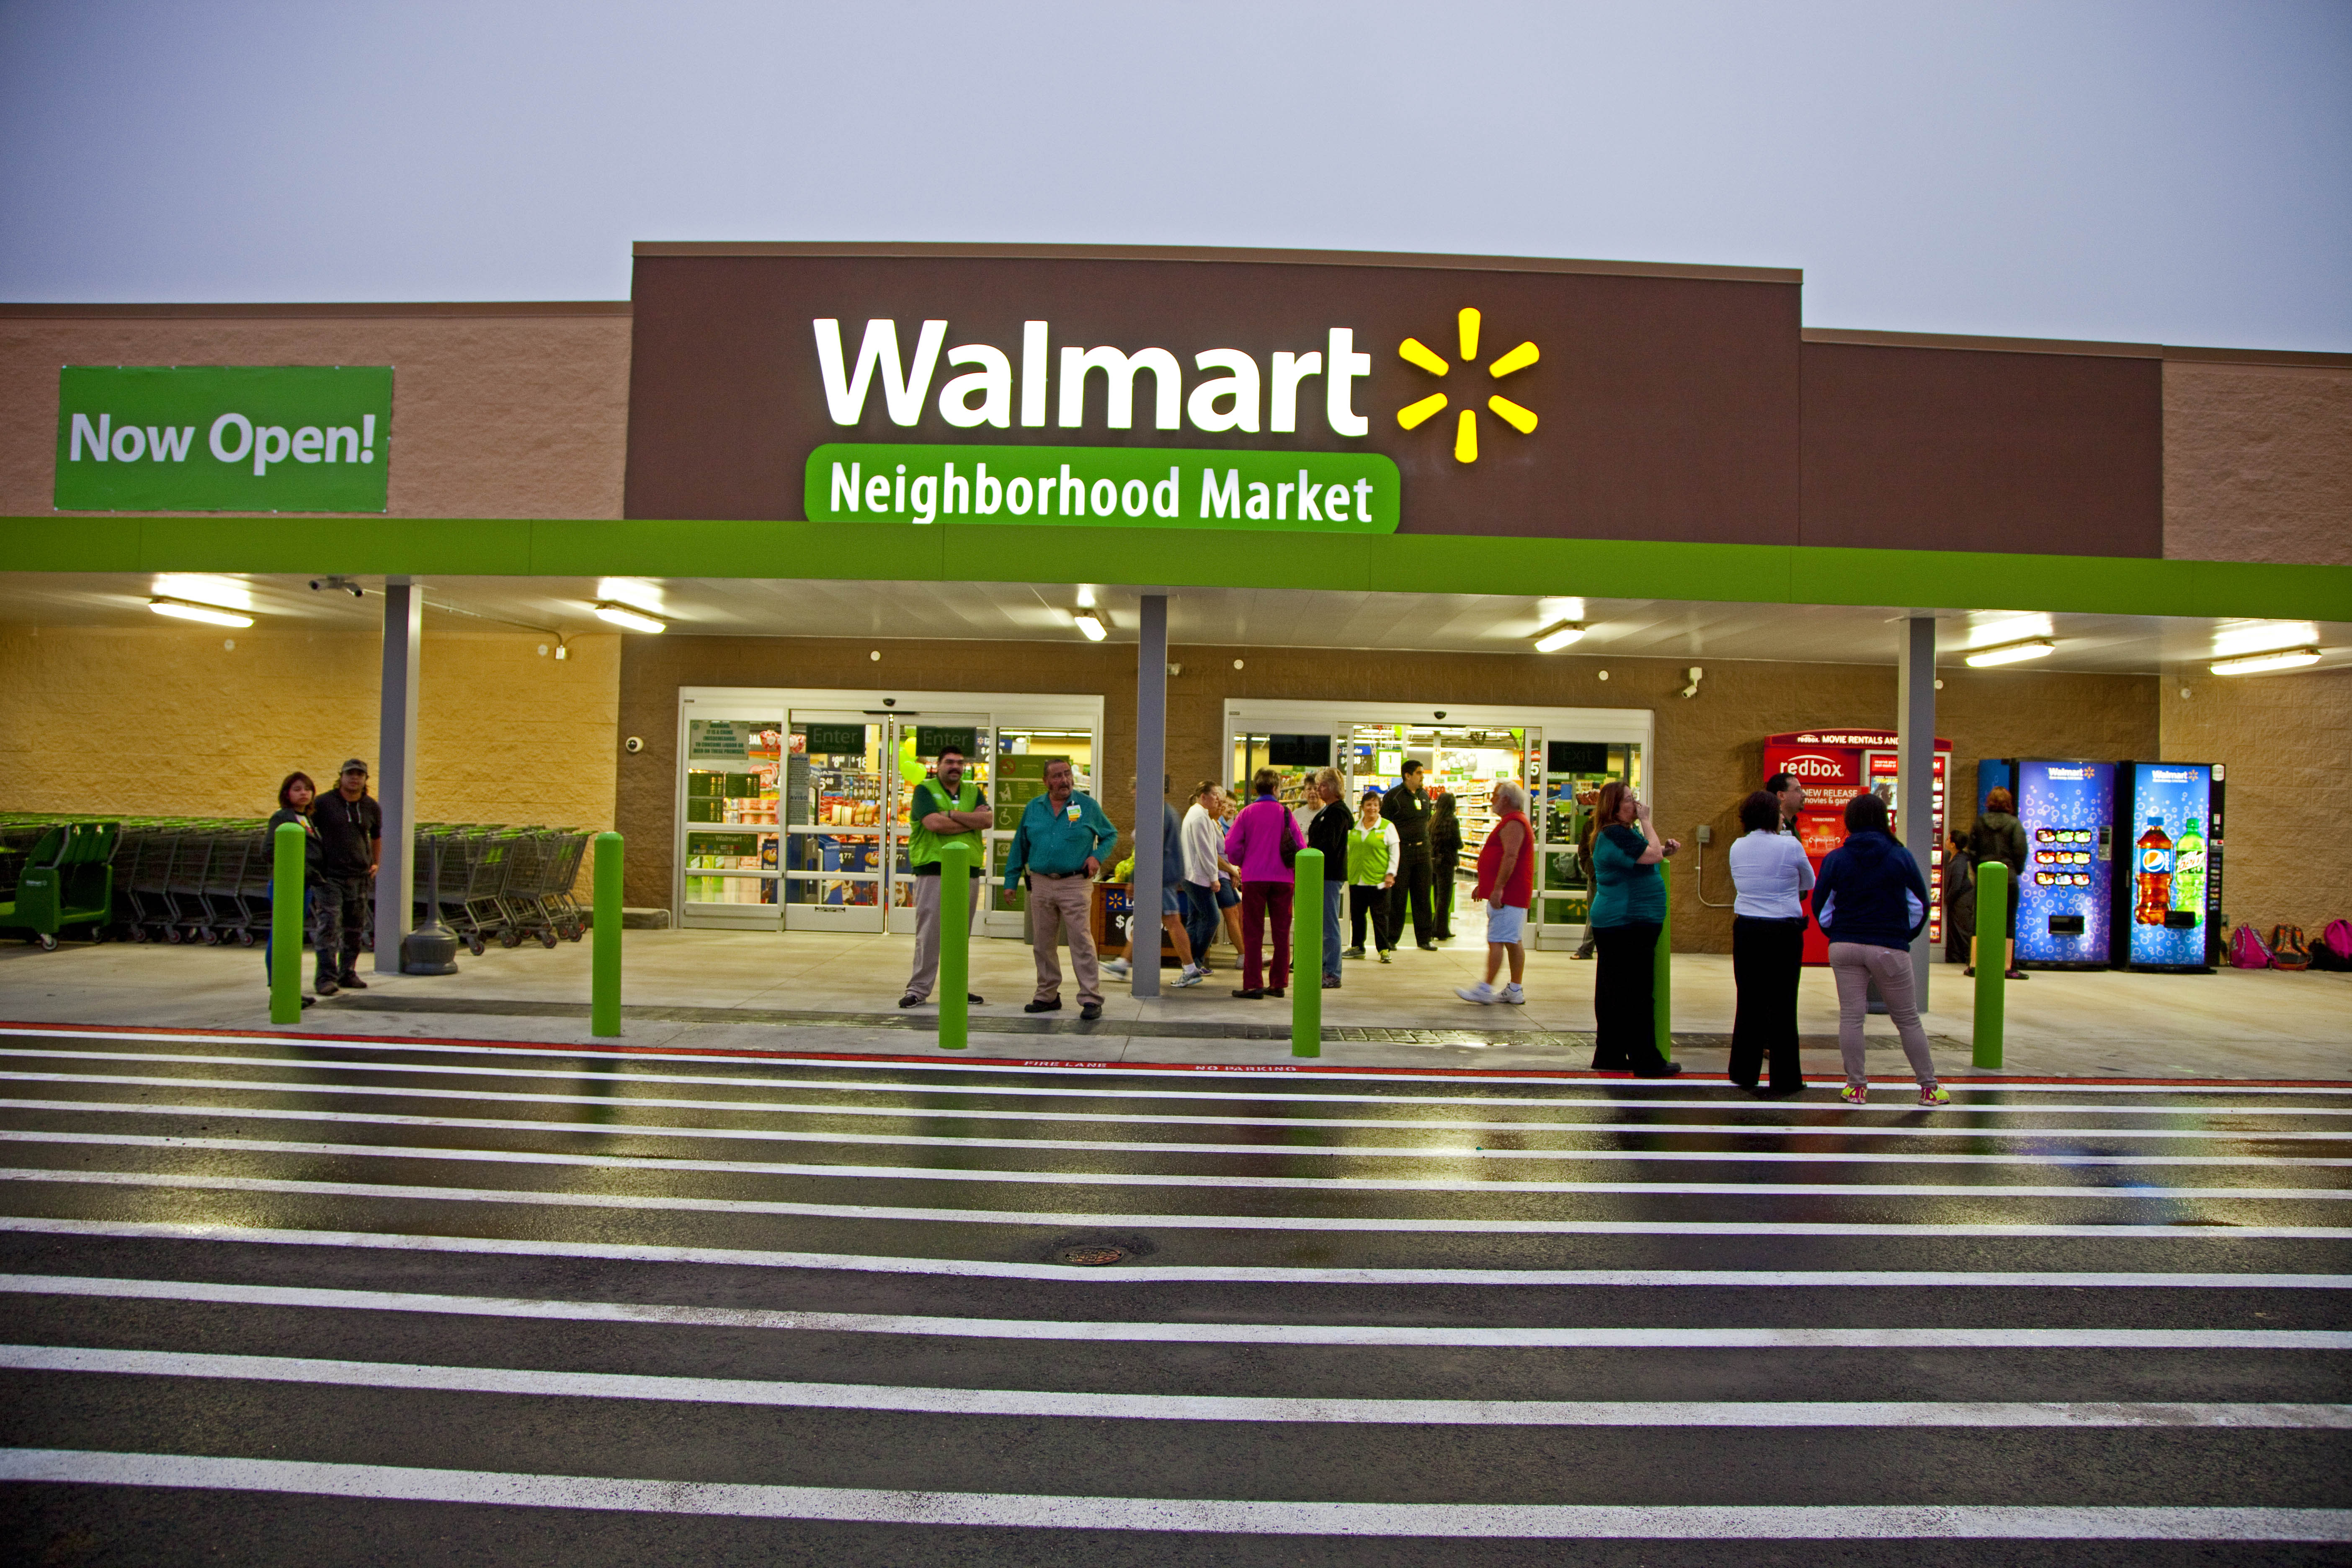 The Walmart Neighborhood Market held its Grand Opening in ...